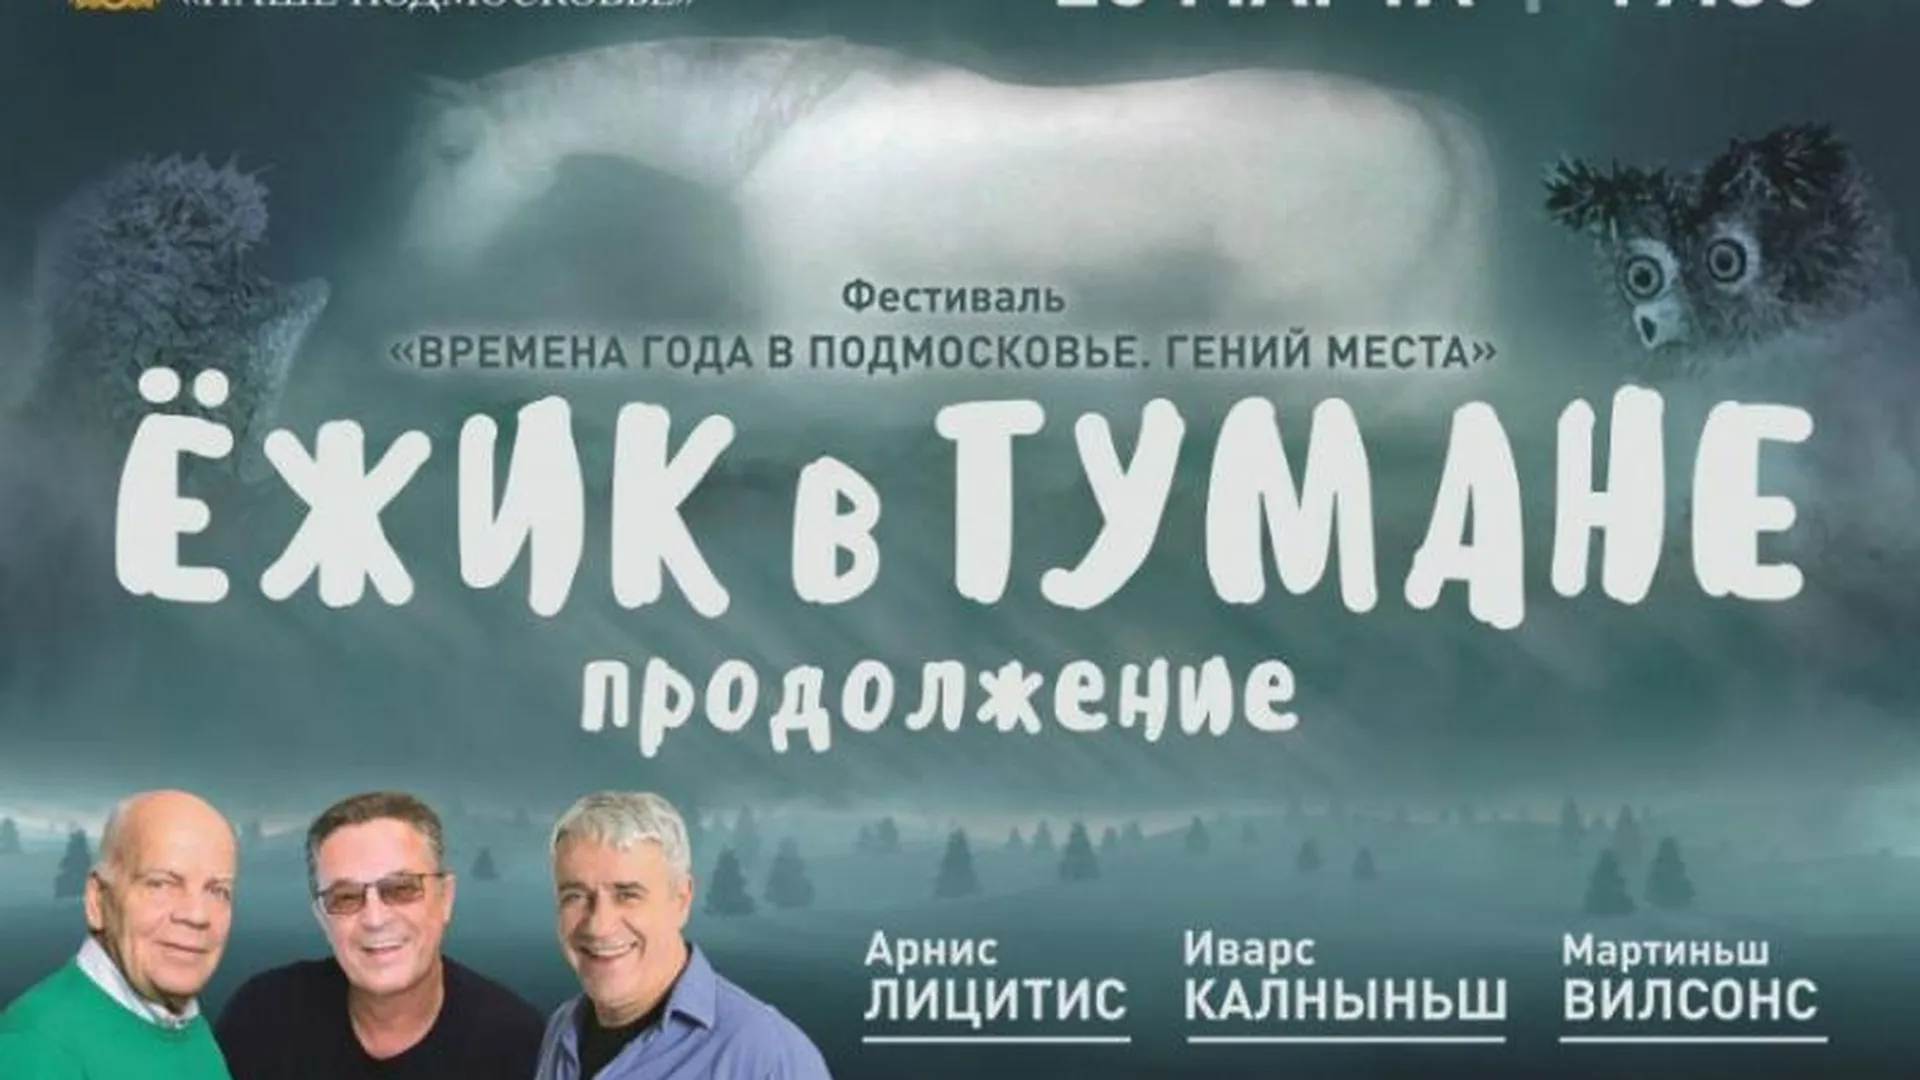 Спектакль «Ежик в тумане» покажут в Одинцове в рамках фестиваля «Времена года в Подмосковье. Гений места»